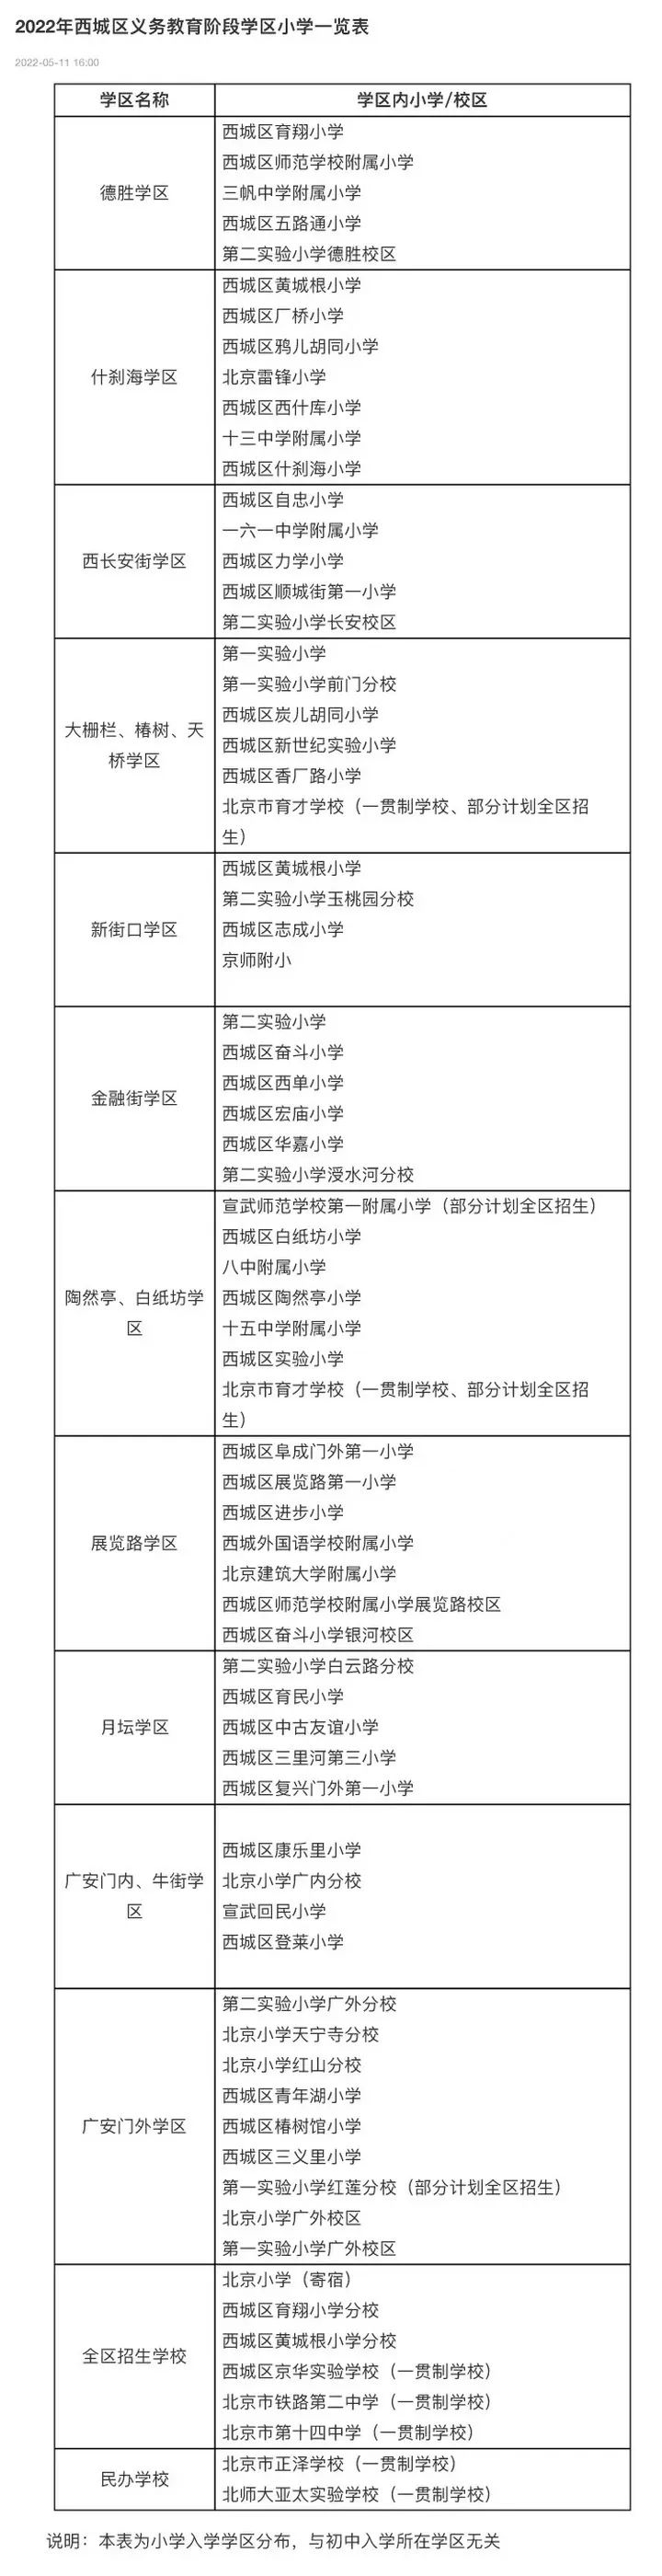 北京4月22日以来累计报告928例感染者涉及15个区古装剧排名第一